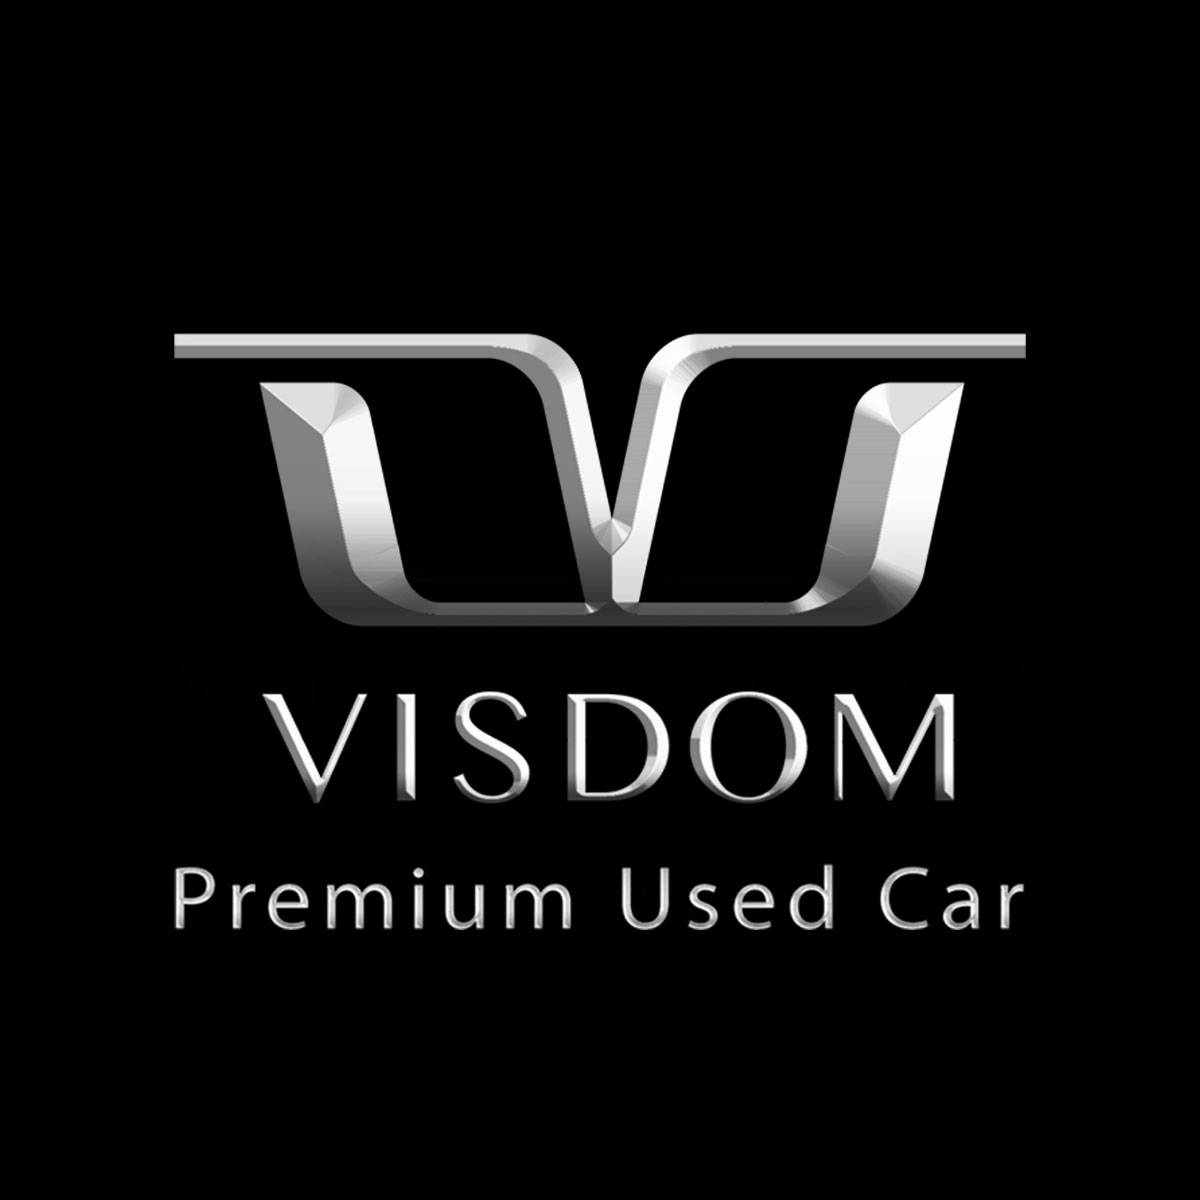 Visdom Premium Used Car